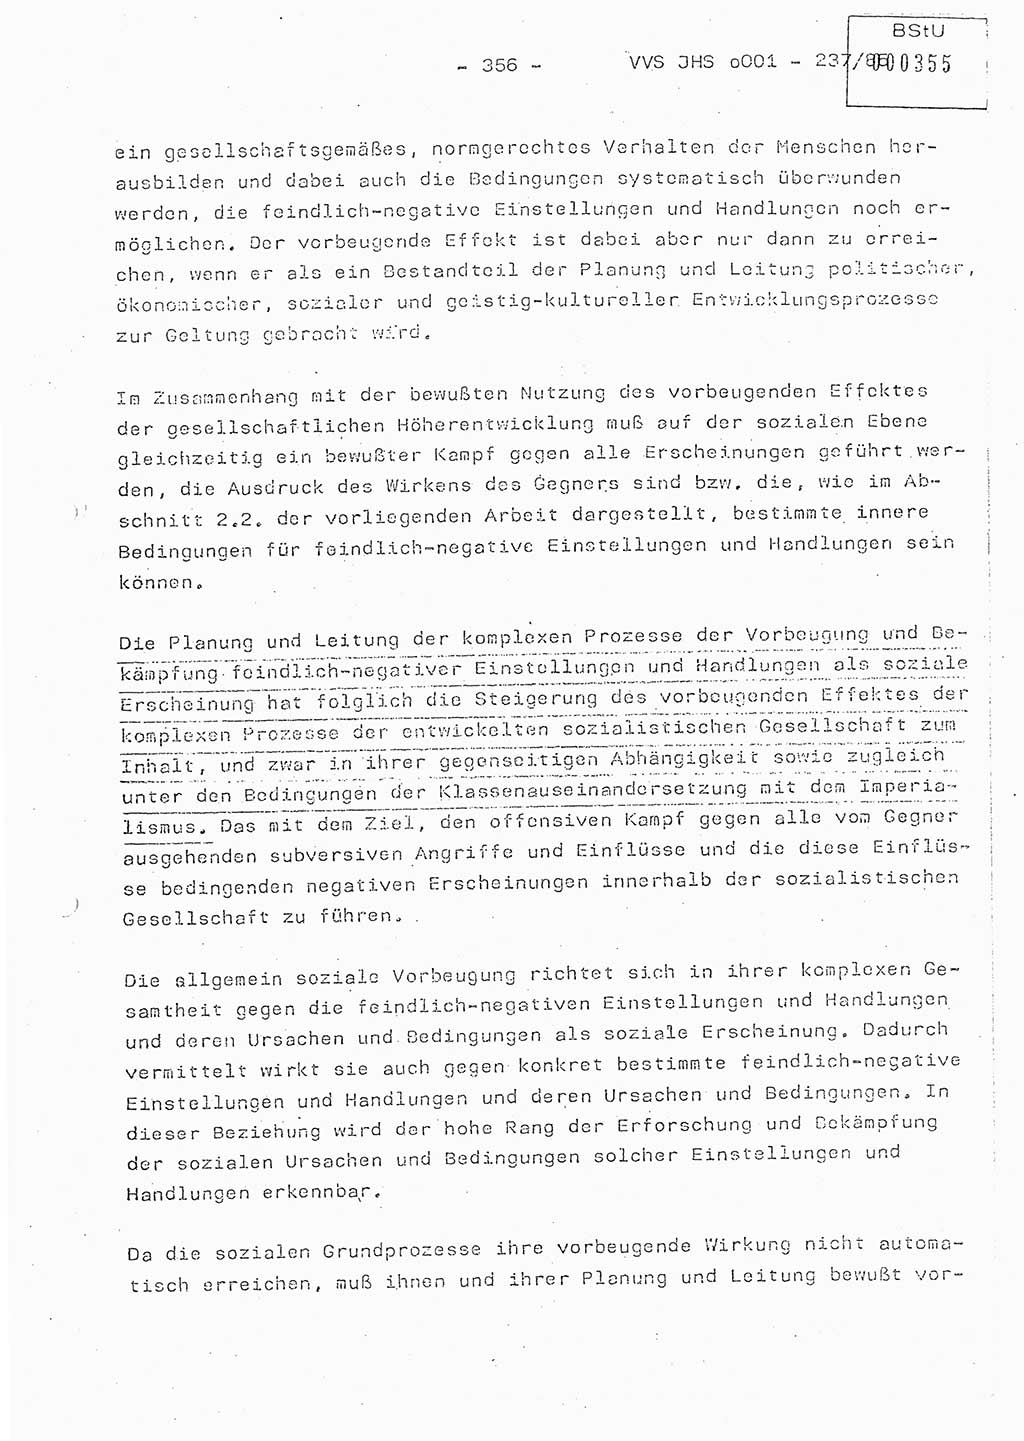 Dissertation Oberstleutnant Peter Jakulski (JHS), Oberstleutnat Christian Rudolph (HA Ⅸ), Major Horst Böttger (ZMD), Major Wolfgang Grüneberg (JHS), Major Albert Meutsch (JHS), Ministerium für Staatssicherheit (MfS) [Deutsche Demokratische Republik (DDR)], Juristische Hochschule (JHS), Vertrauliche Verschlußsache (VVS) o001-237/85, Potsdam 1985, Seite 356 (Diss. MfS DDR JHS VVS o001-237/85 1985, S. 356)